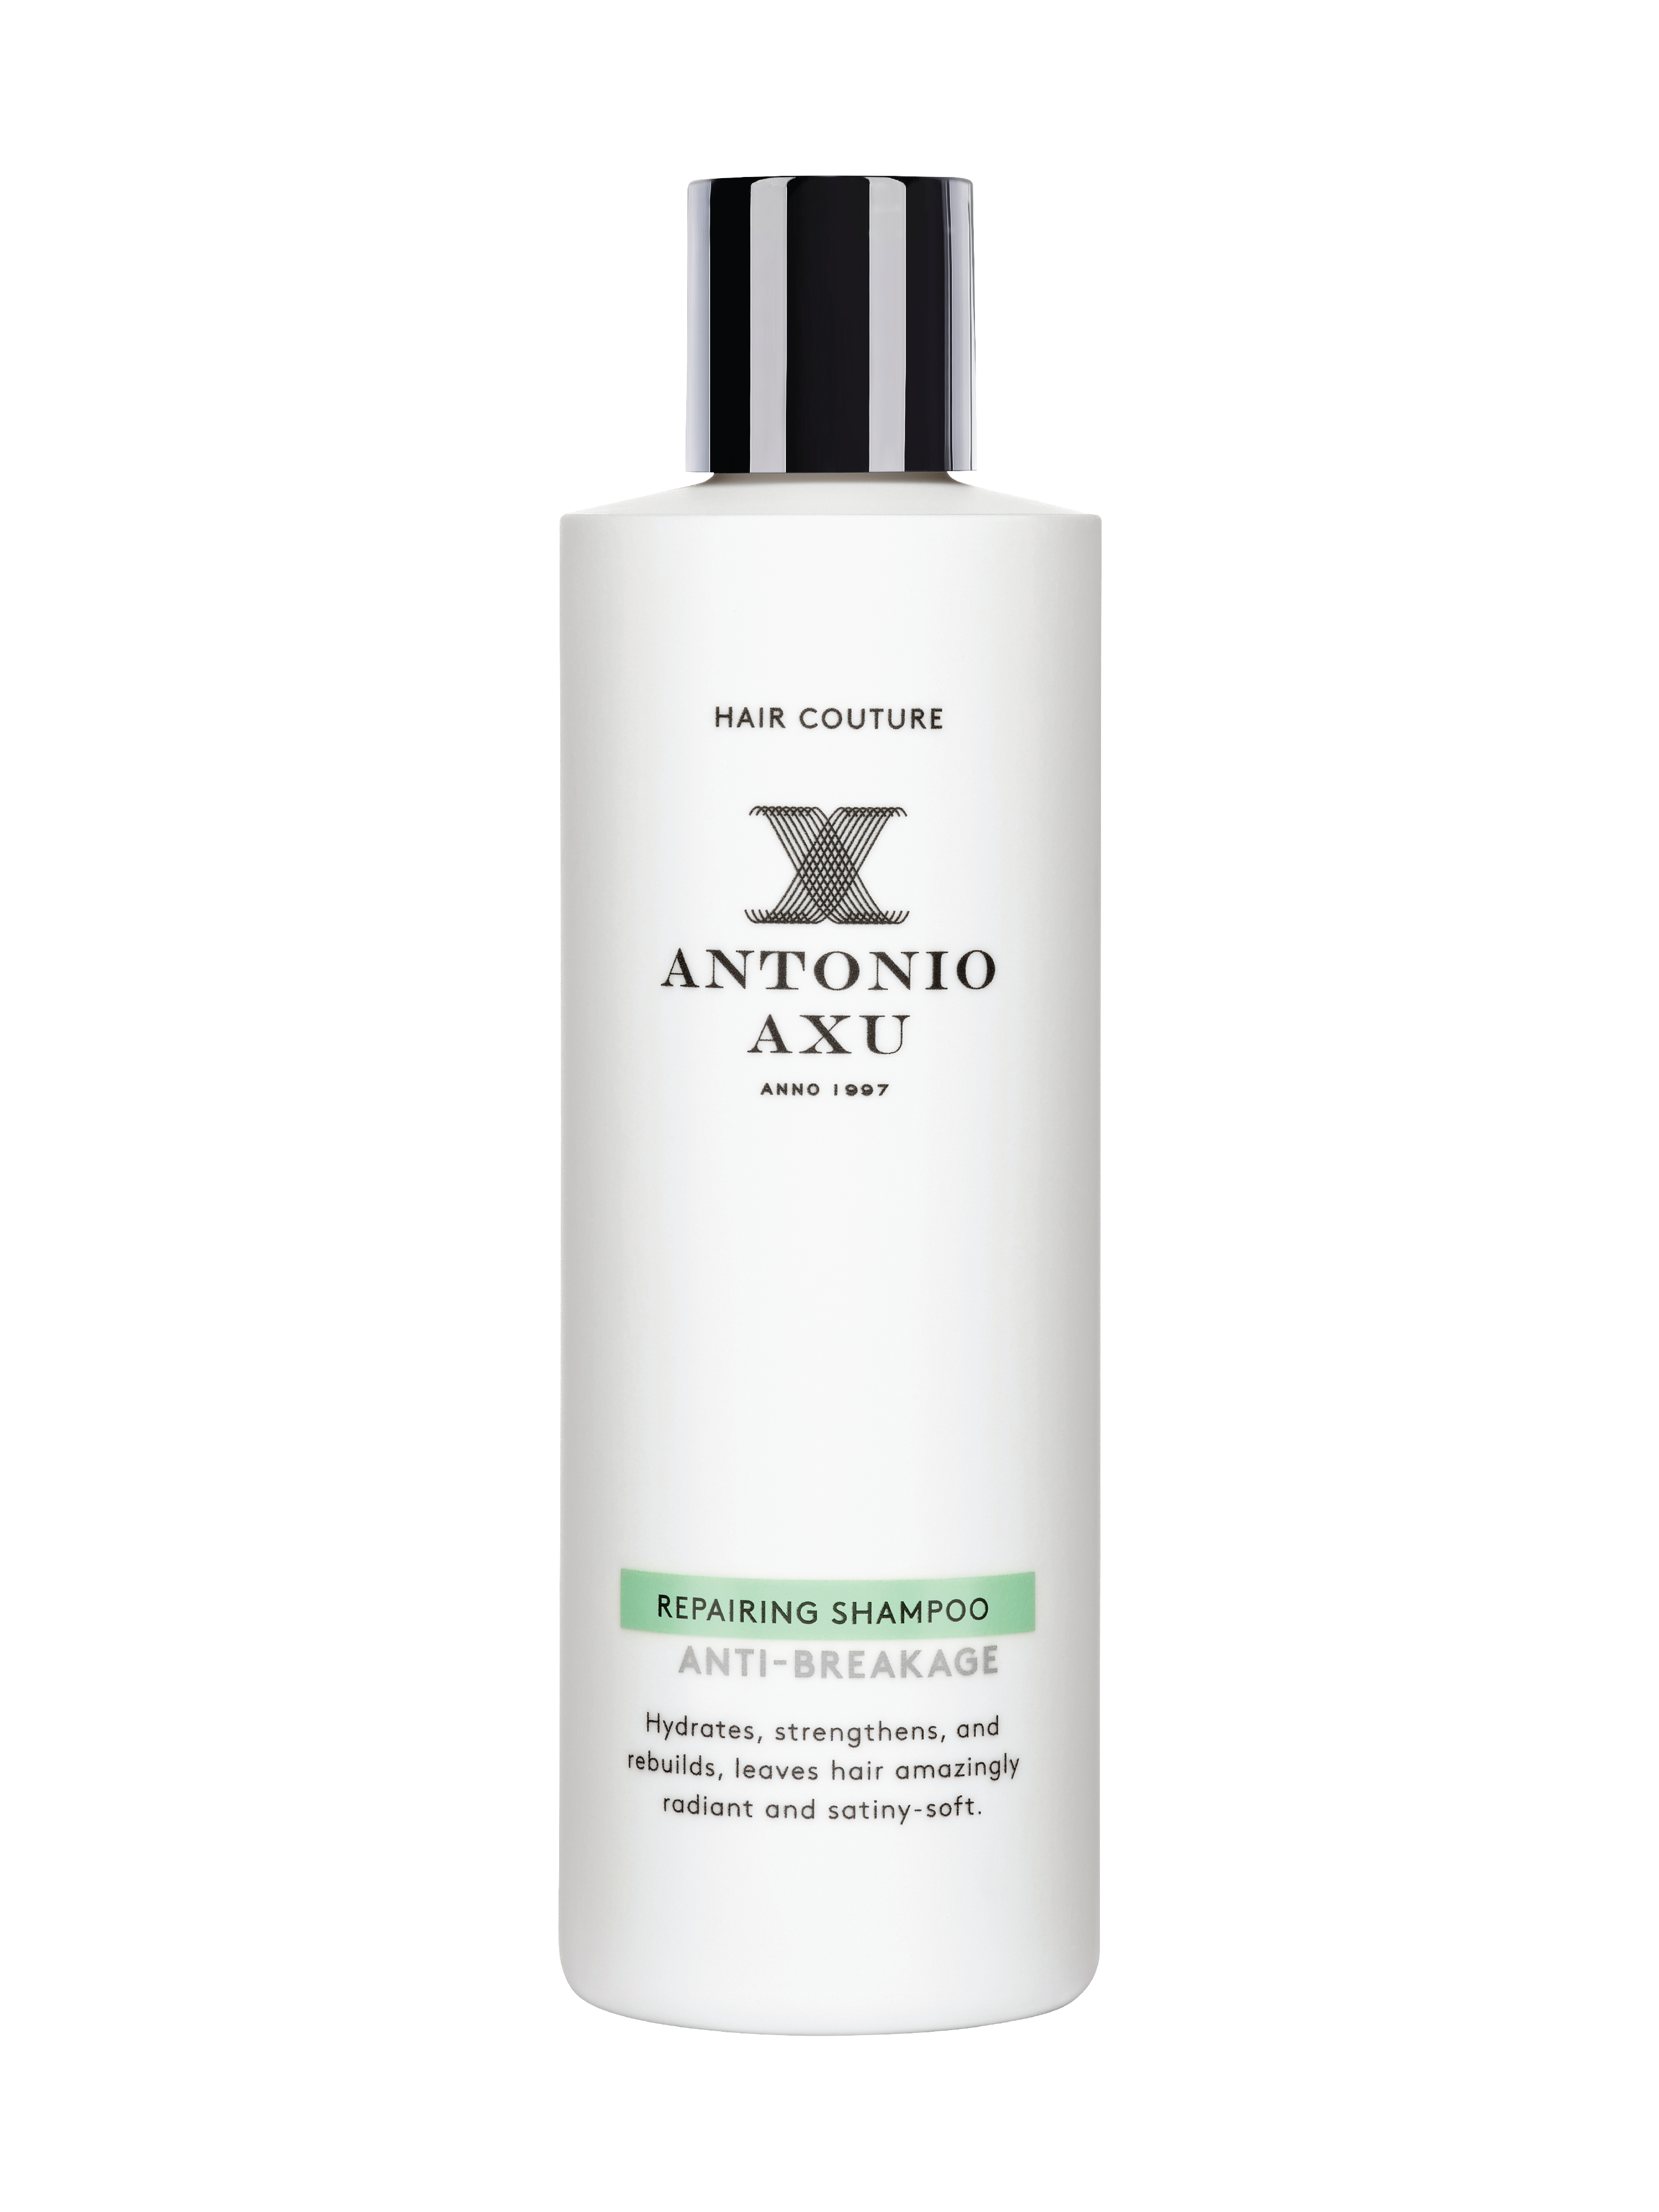 Antonio Axu Repairing Shampoo Anti-Breakage, 250 ml